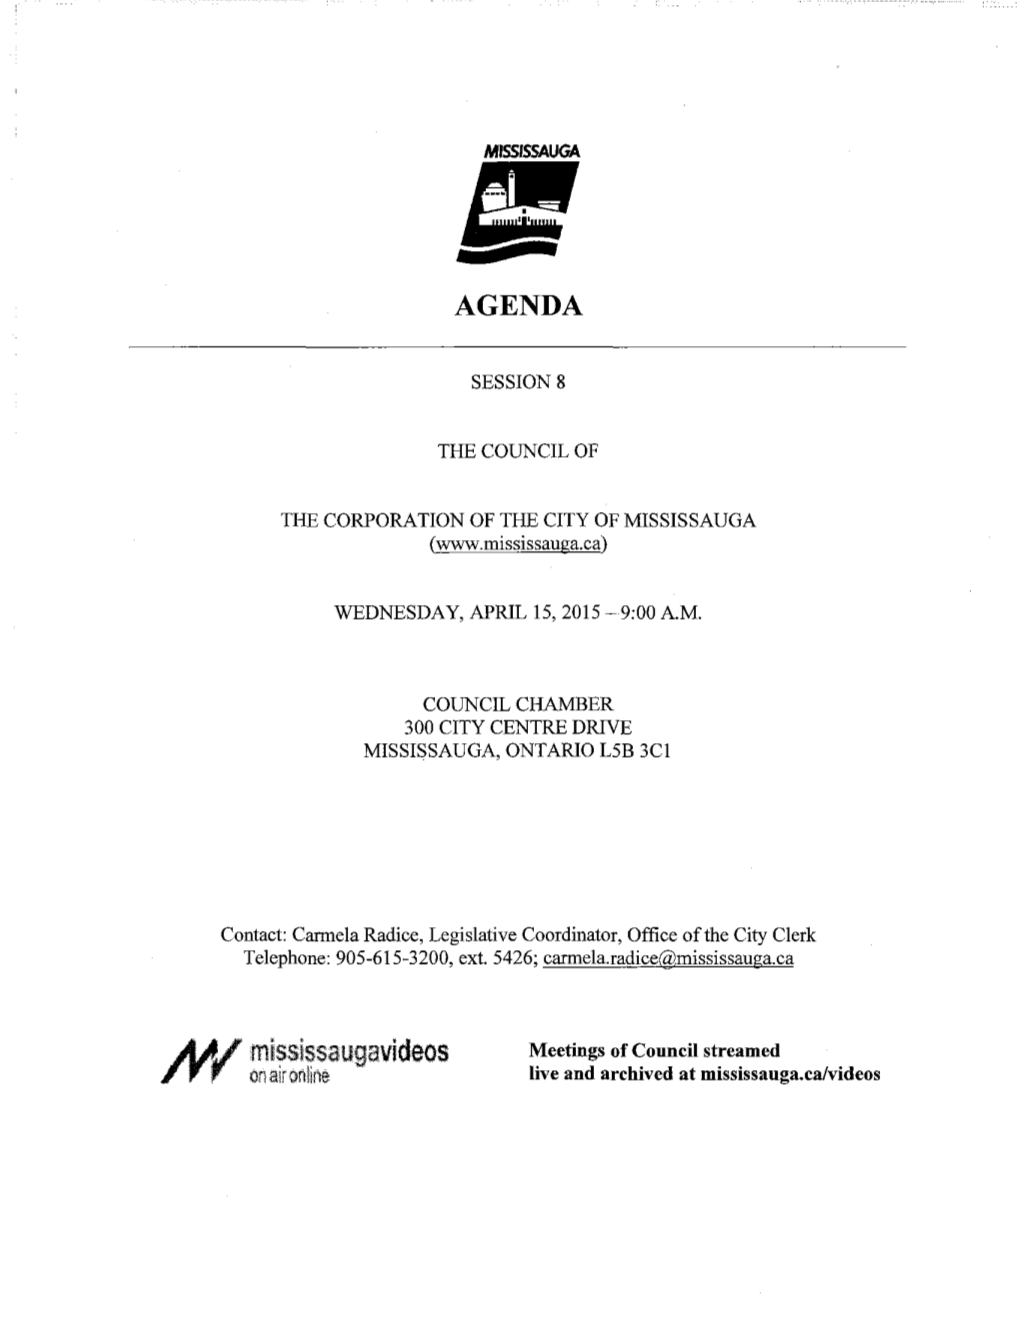 Council Agenda -2- April 15,2015